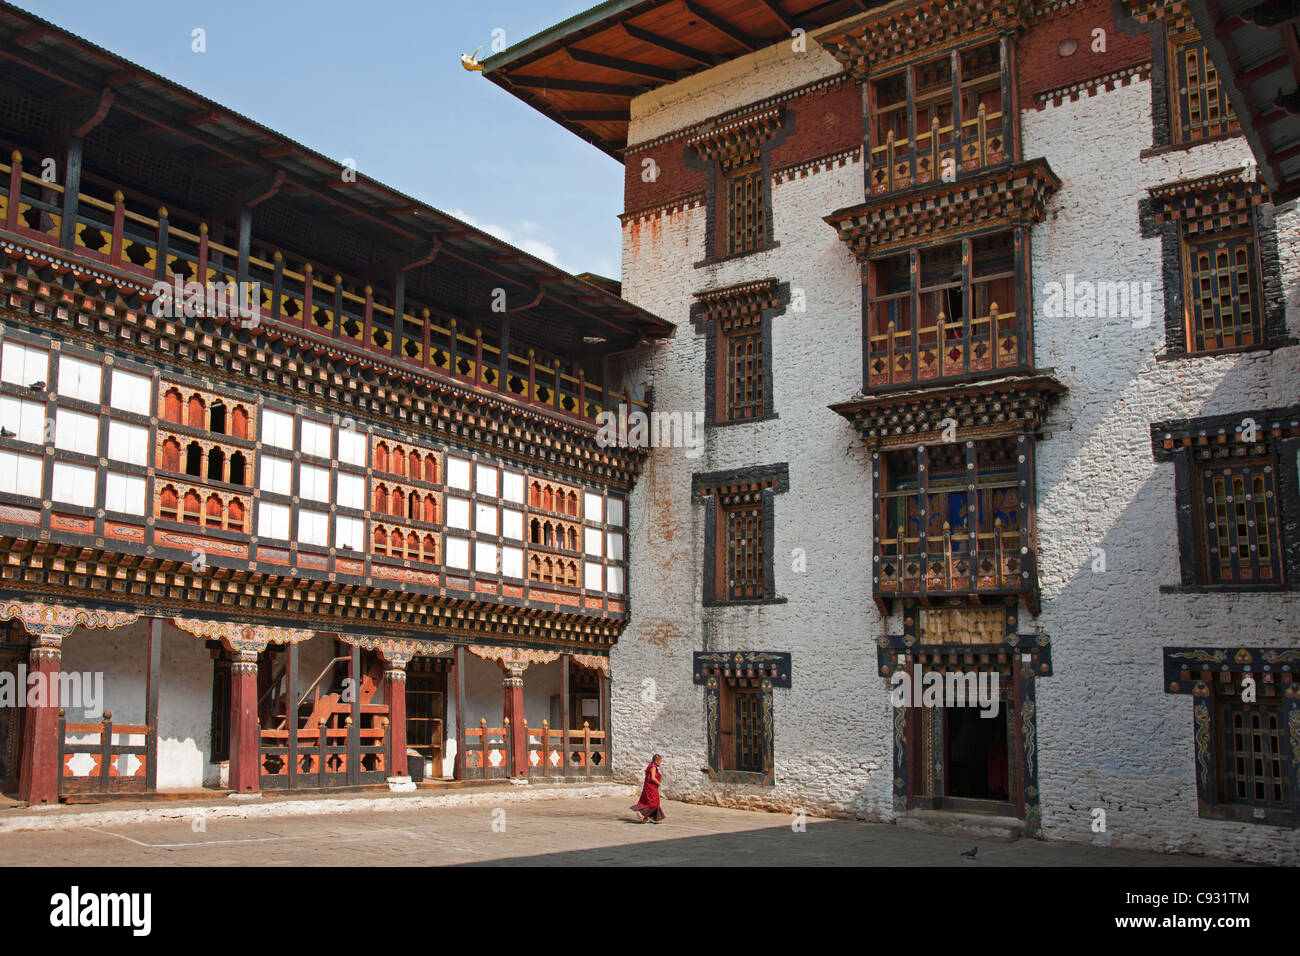 The impressive Dzong, or fortress, at Trashigang. Stock Photo